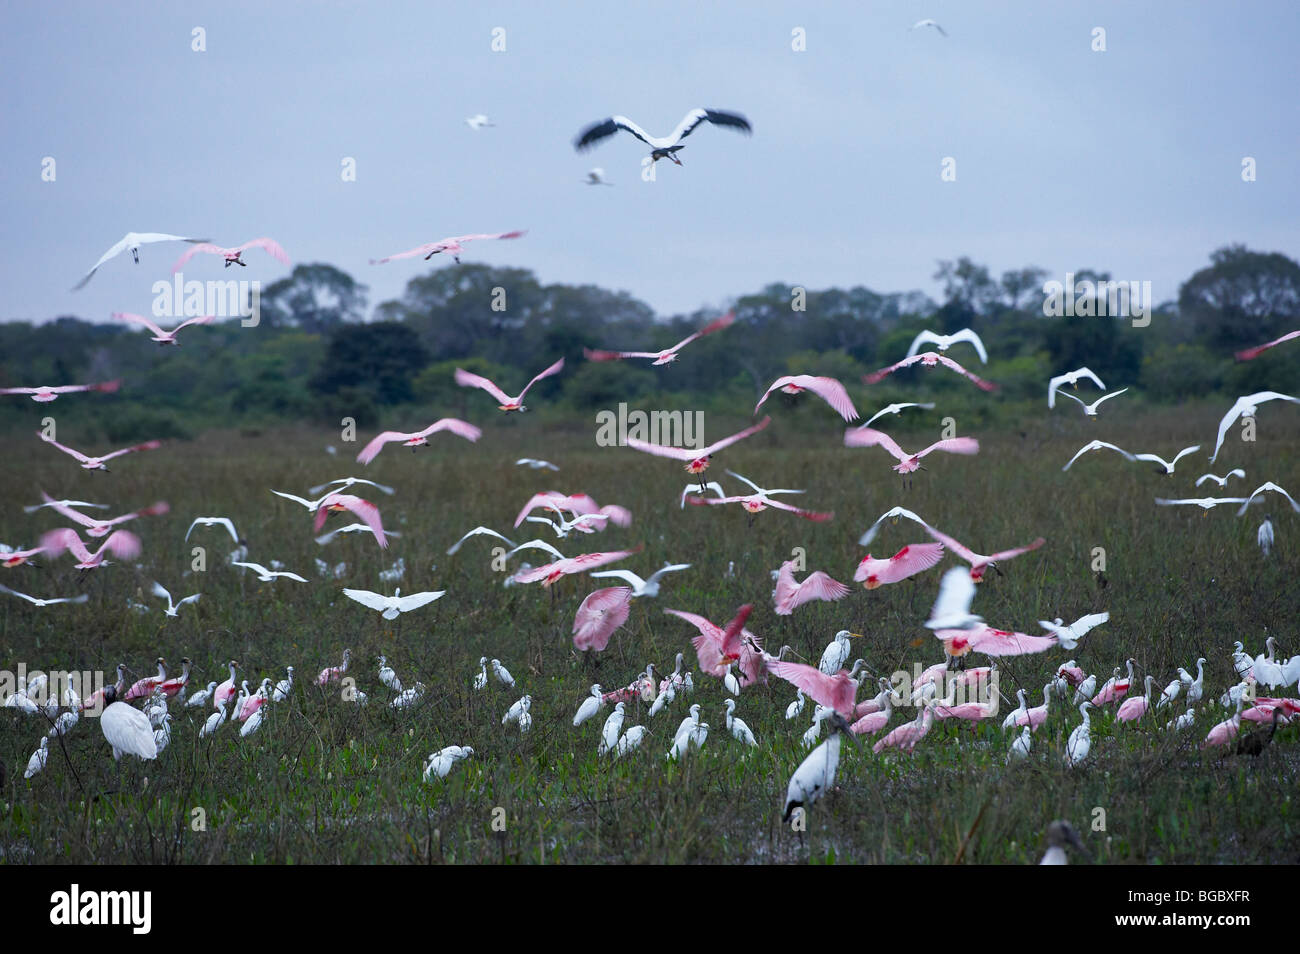 Flying Sterne de spatules de flou, Ajaja ajaja, Pantanal, Mato Grosso, Brésil, Amérique du Sud Banque D'Images